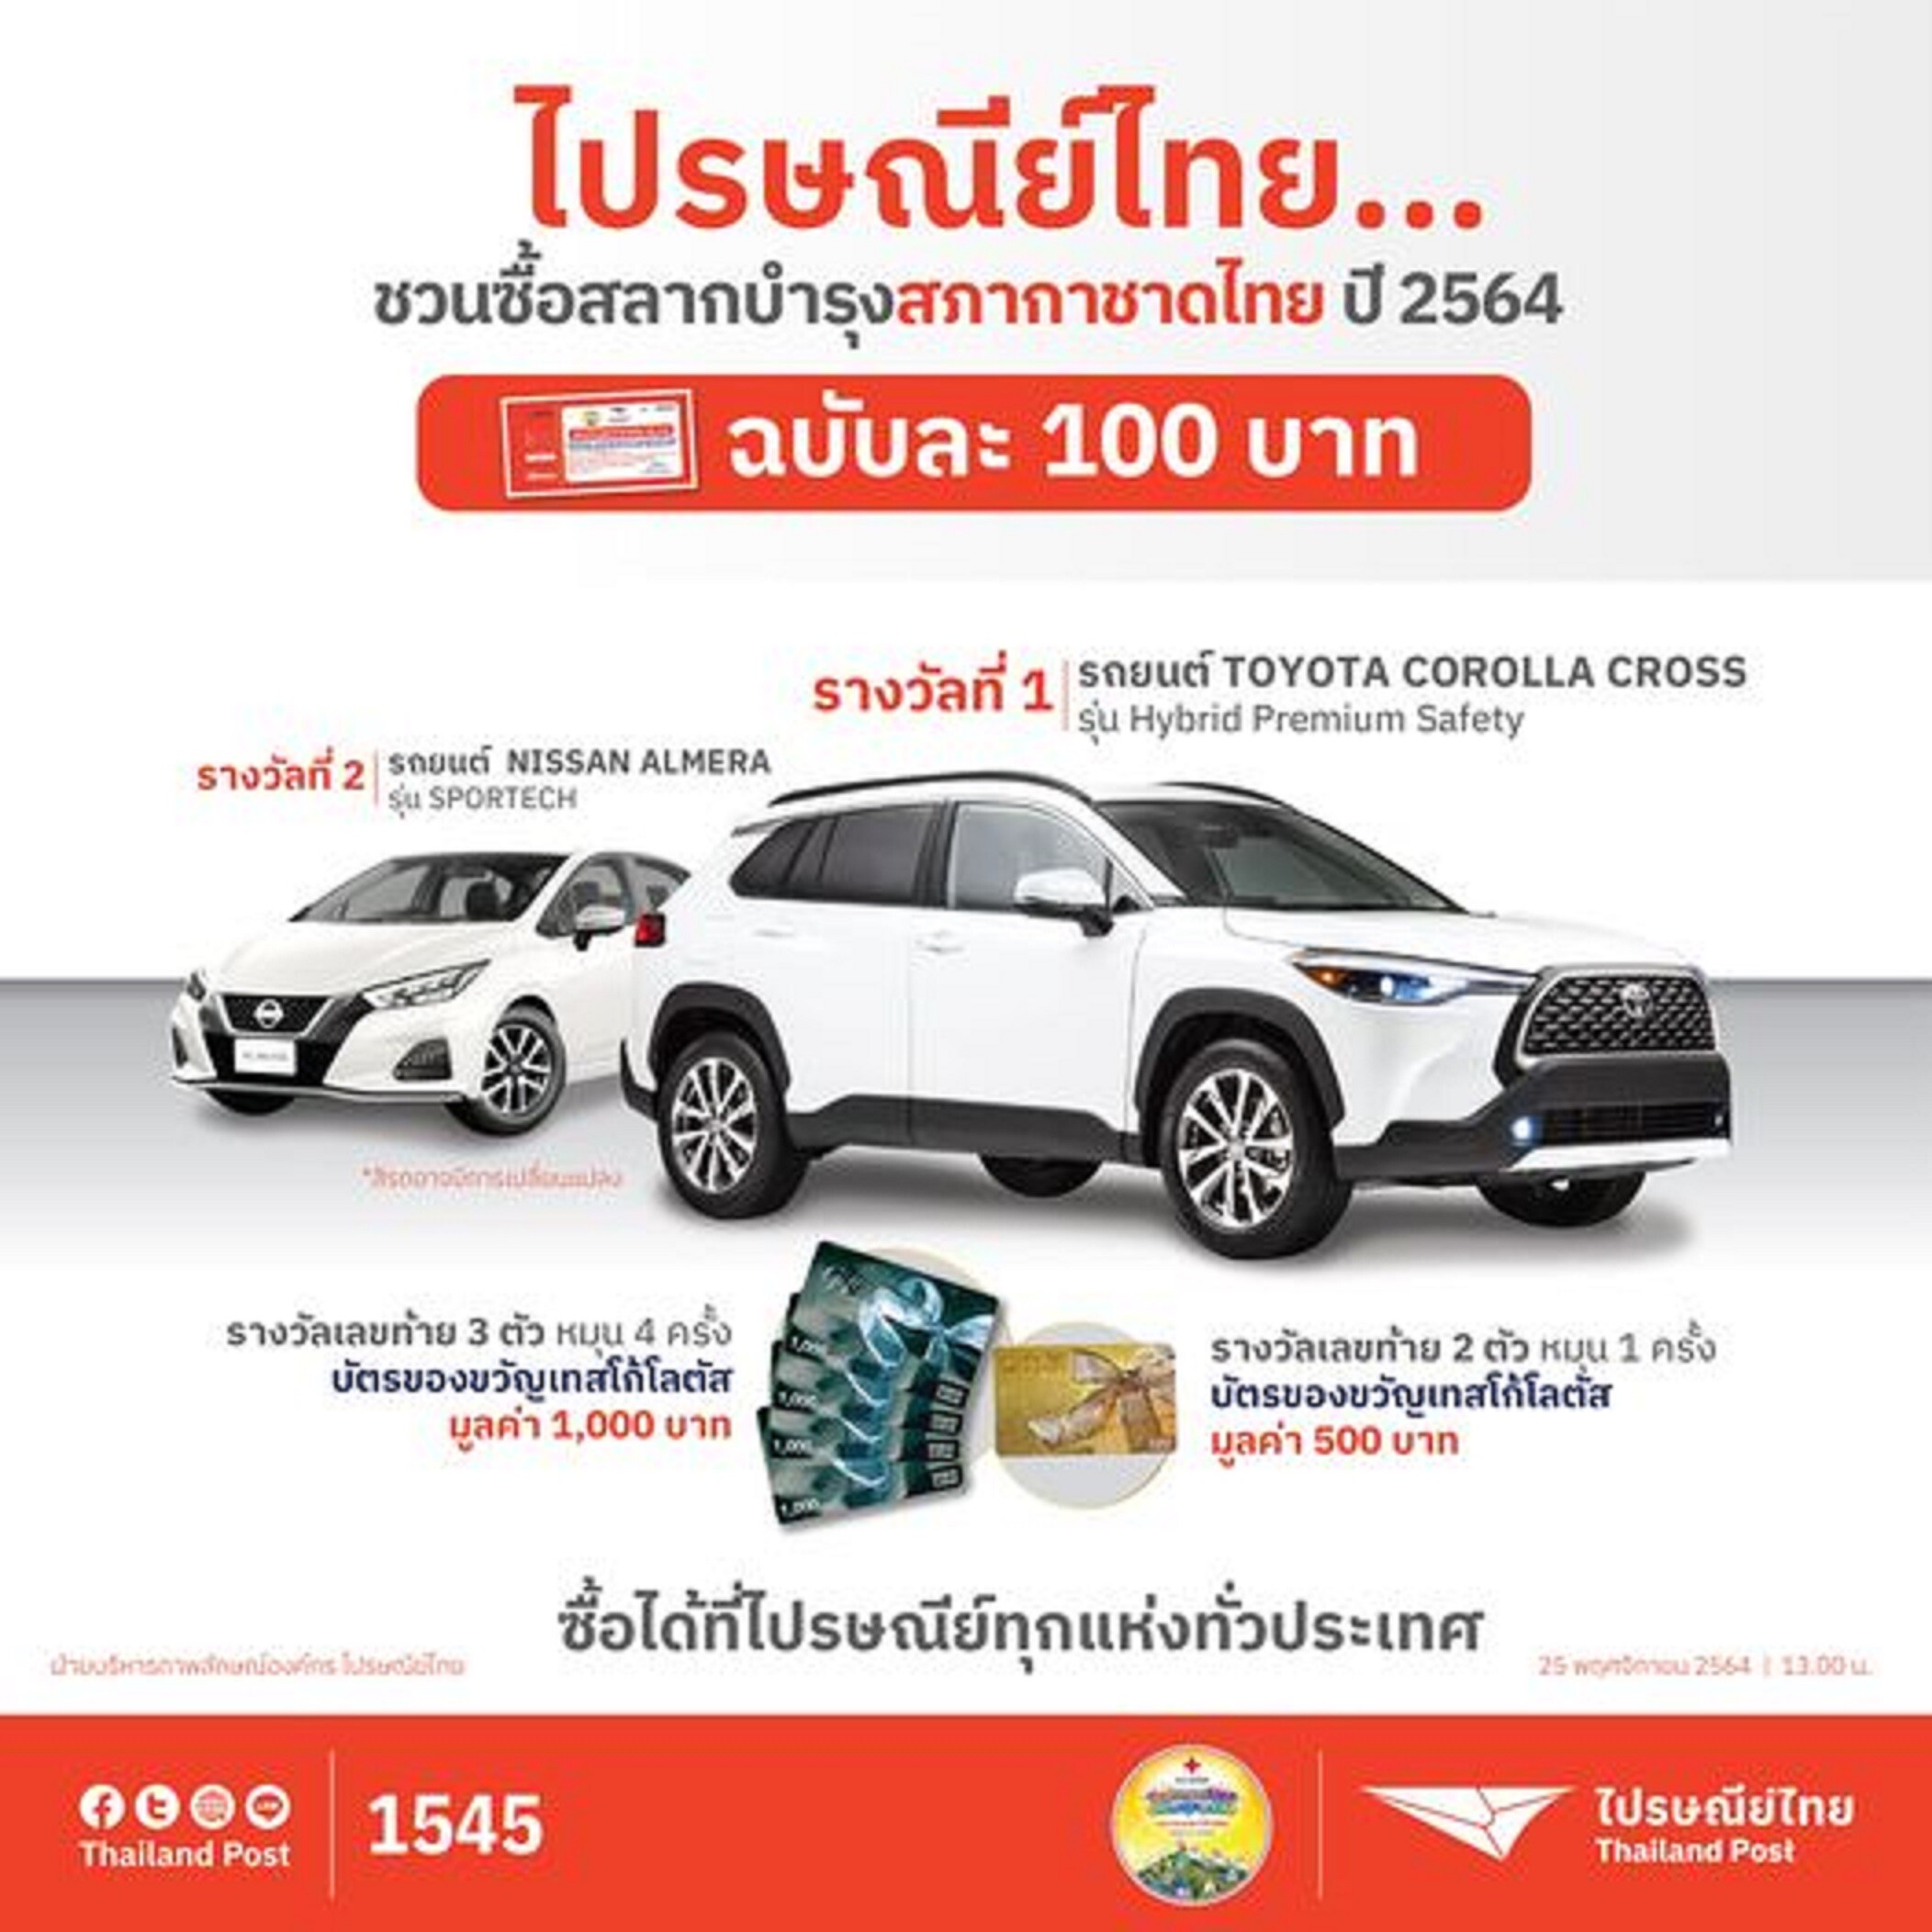 ไปรษณีย์ไทย ชวนช้อปของดีจากงานกาชาดออนไลน์ 2564 พร้อมหนุนร้านค้าจัดค่าส่งราคาพิเศษ-ส่งฟรีถึงบ้าน